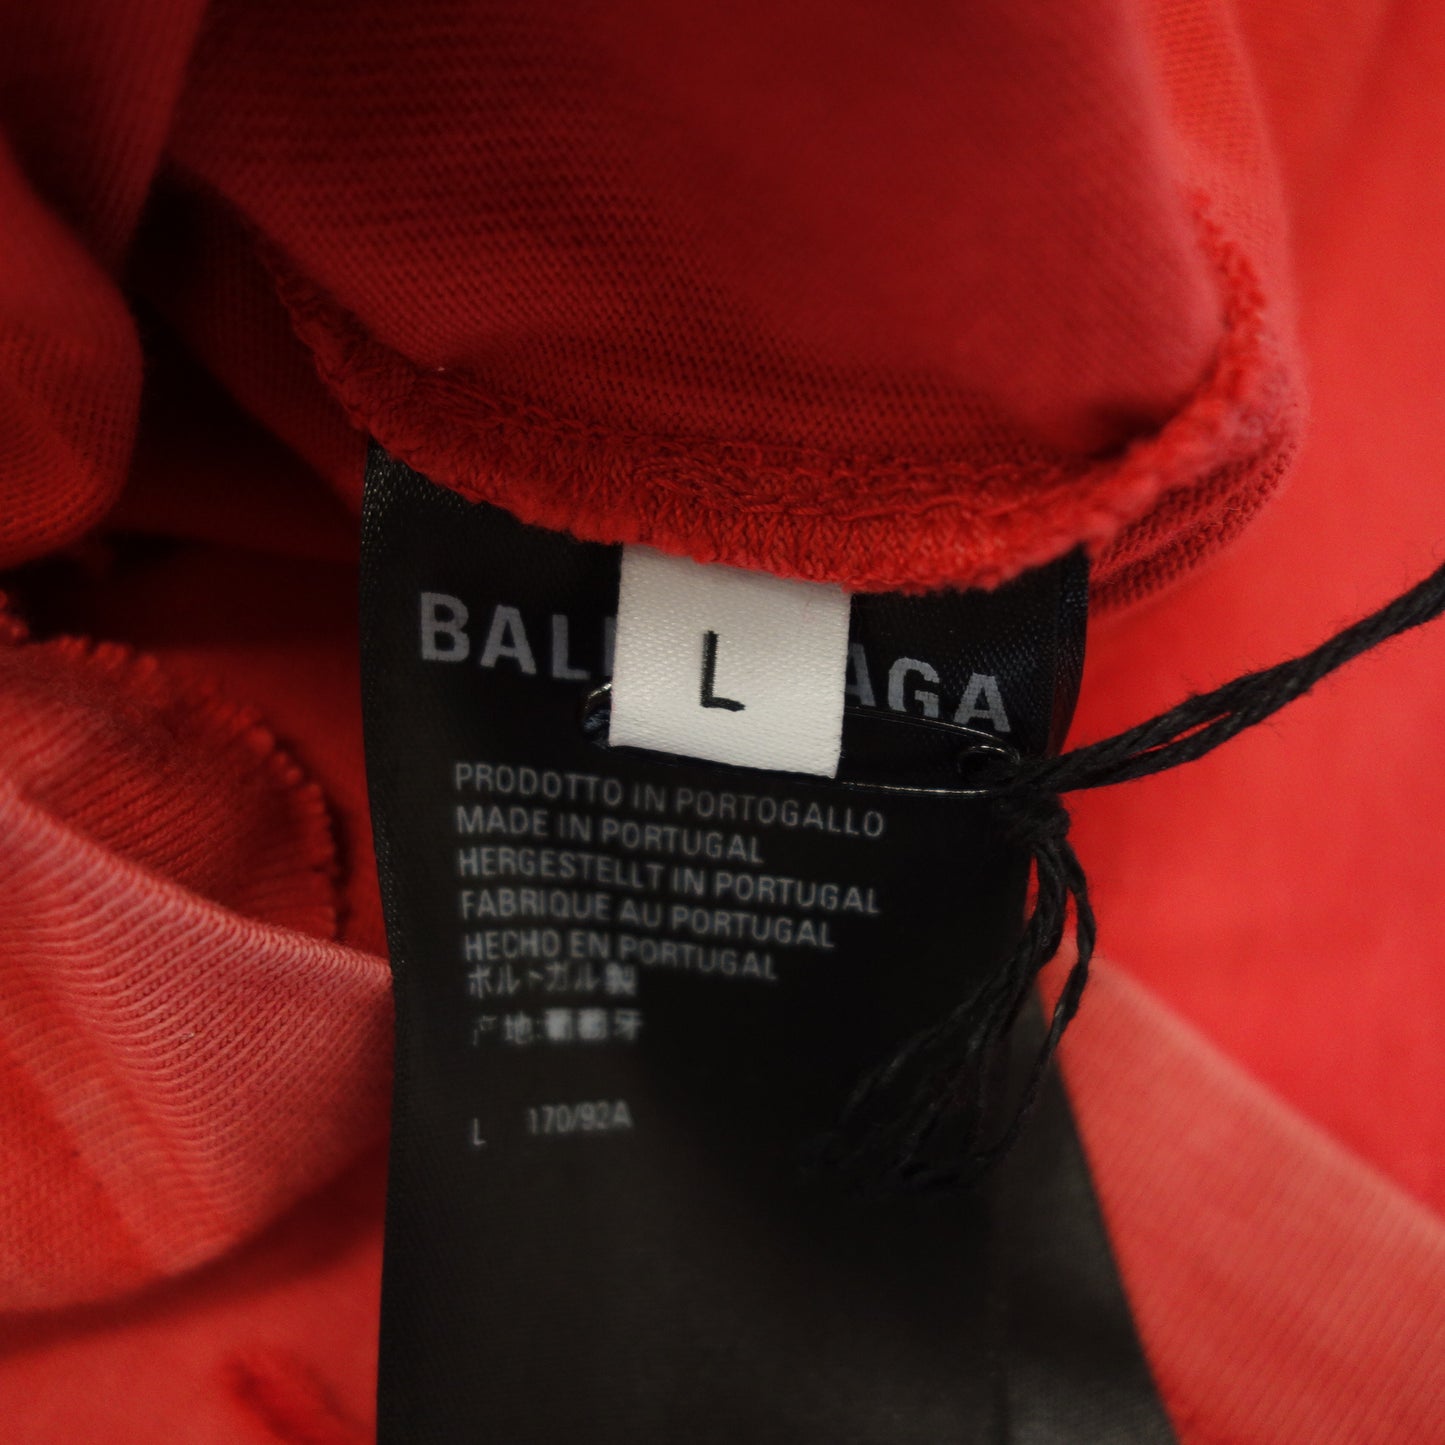 如同新品 ◆ Balenciaga 612965 短袖T恤 破烂仿旧红色 尺码 L BALENCIAGA [AFB1] 